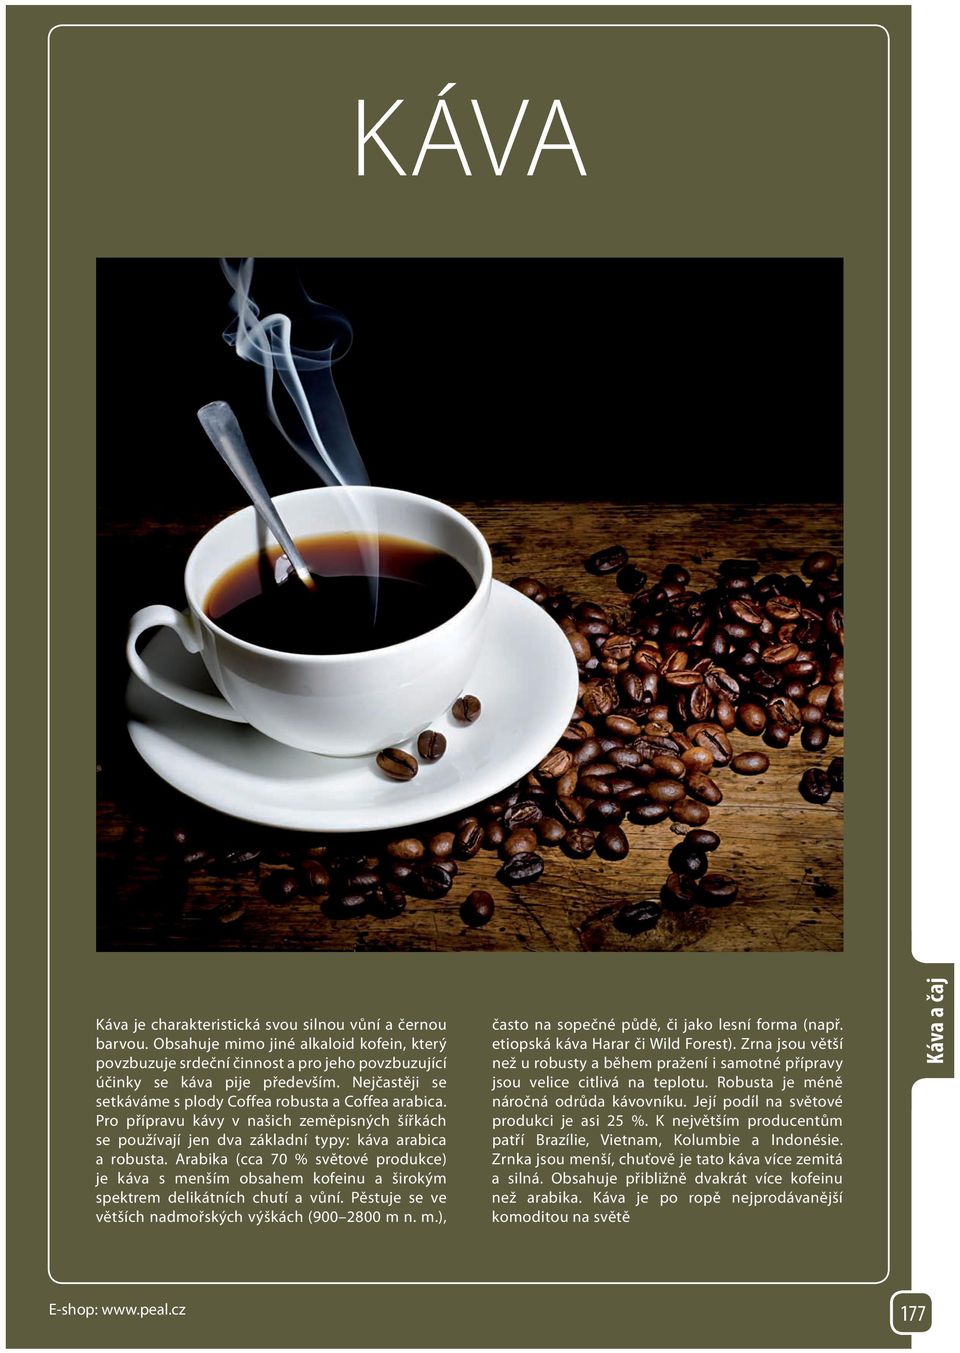 Arabika (cca 70 % světové produkce) je káva s menším obsahem kofeinu a širokým spektrem delikátních chutí a vůní. Pěstuje se ve větších nadmořských výškách (900 2800 m n. m.), často na sopečné půdě, či jako lesní forma (např.